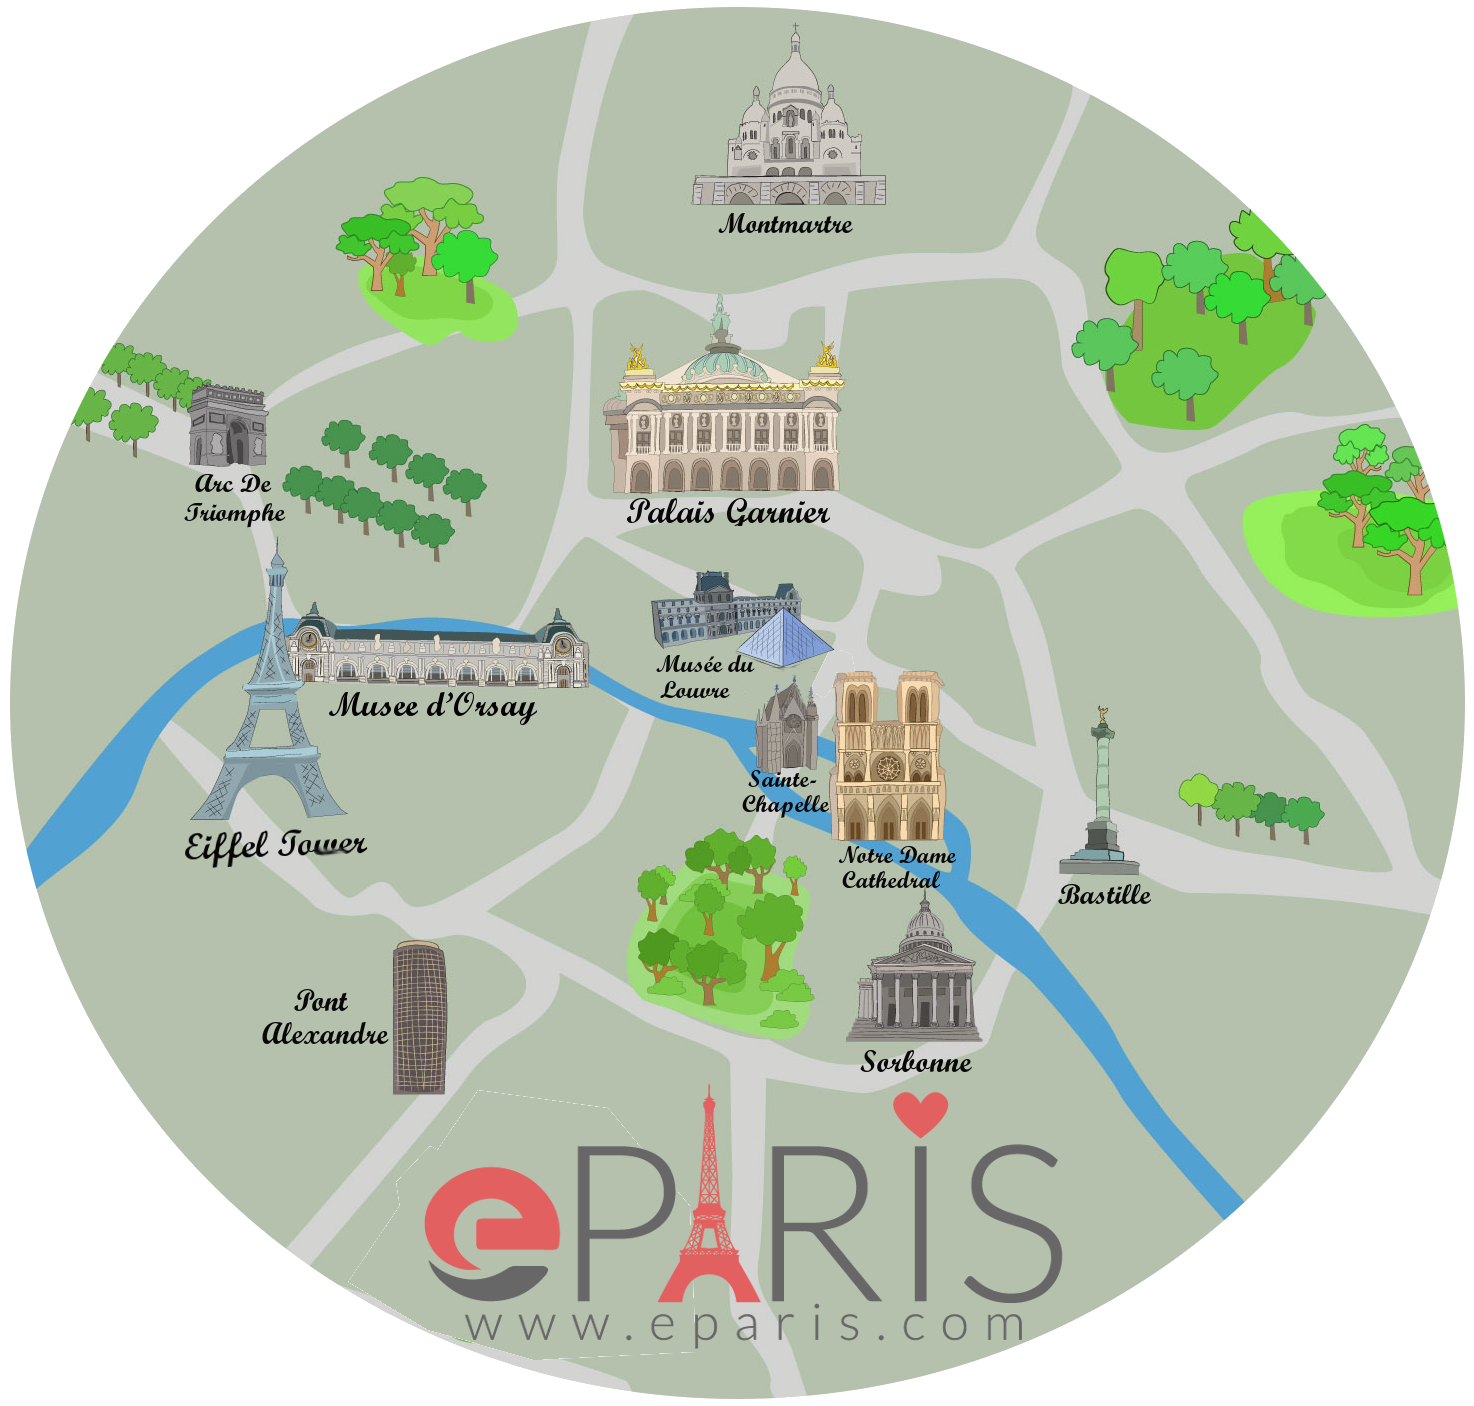 Paris Map of Attractions eParis